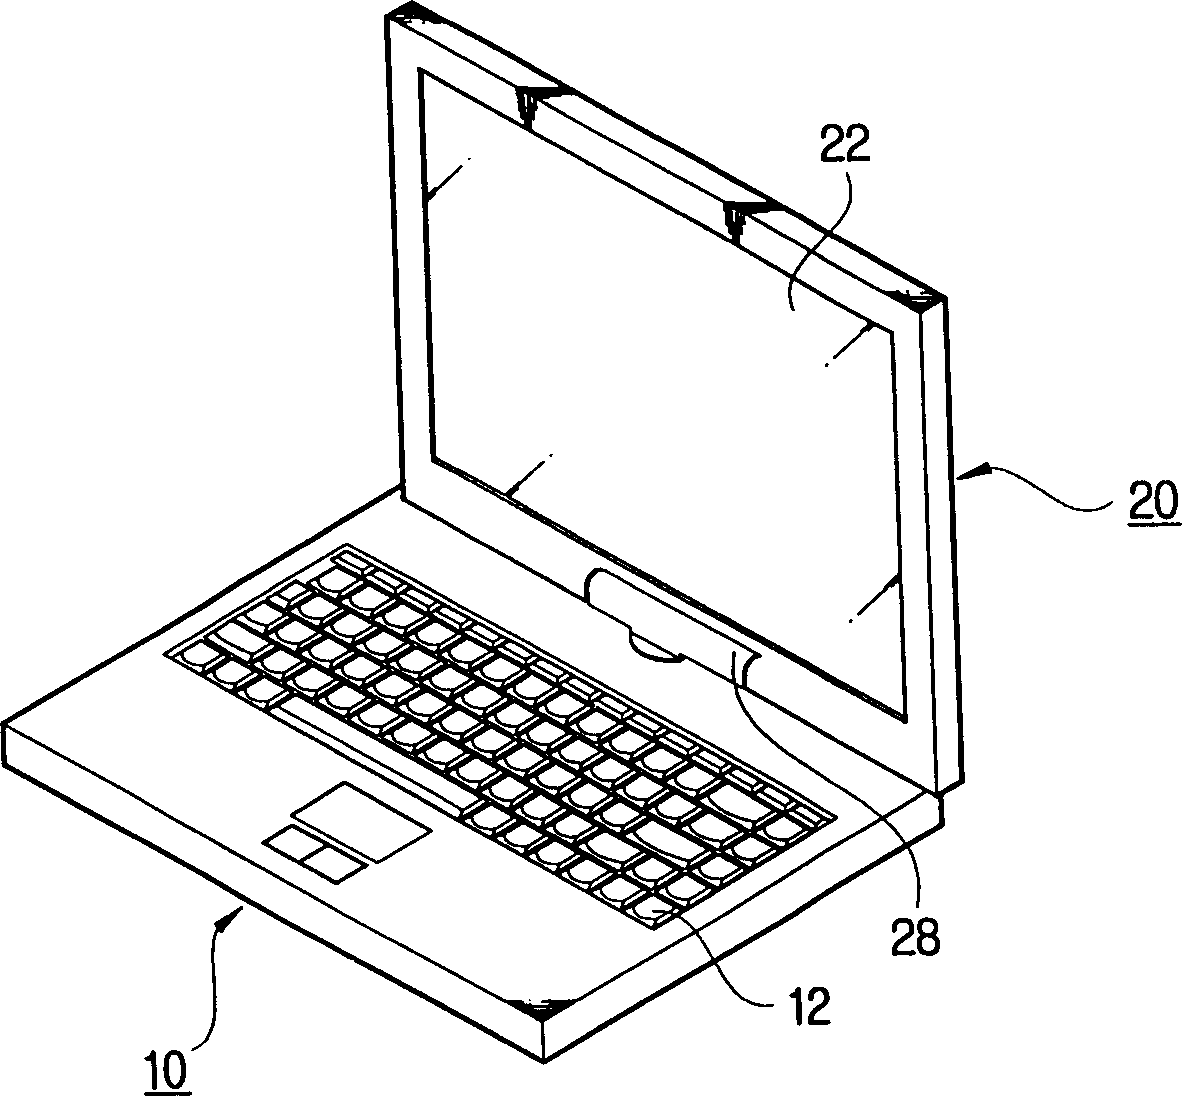 Portable computer